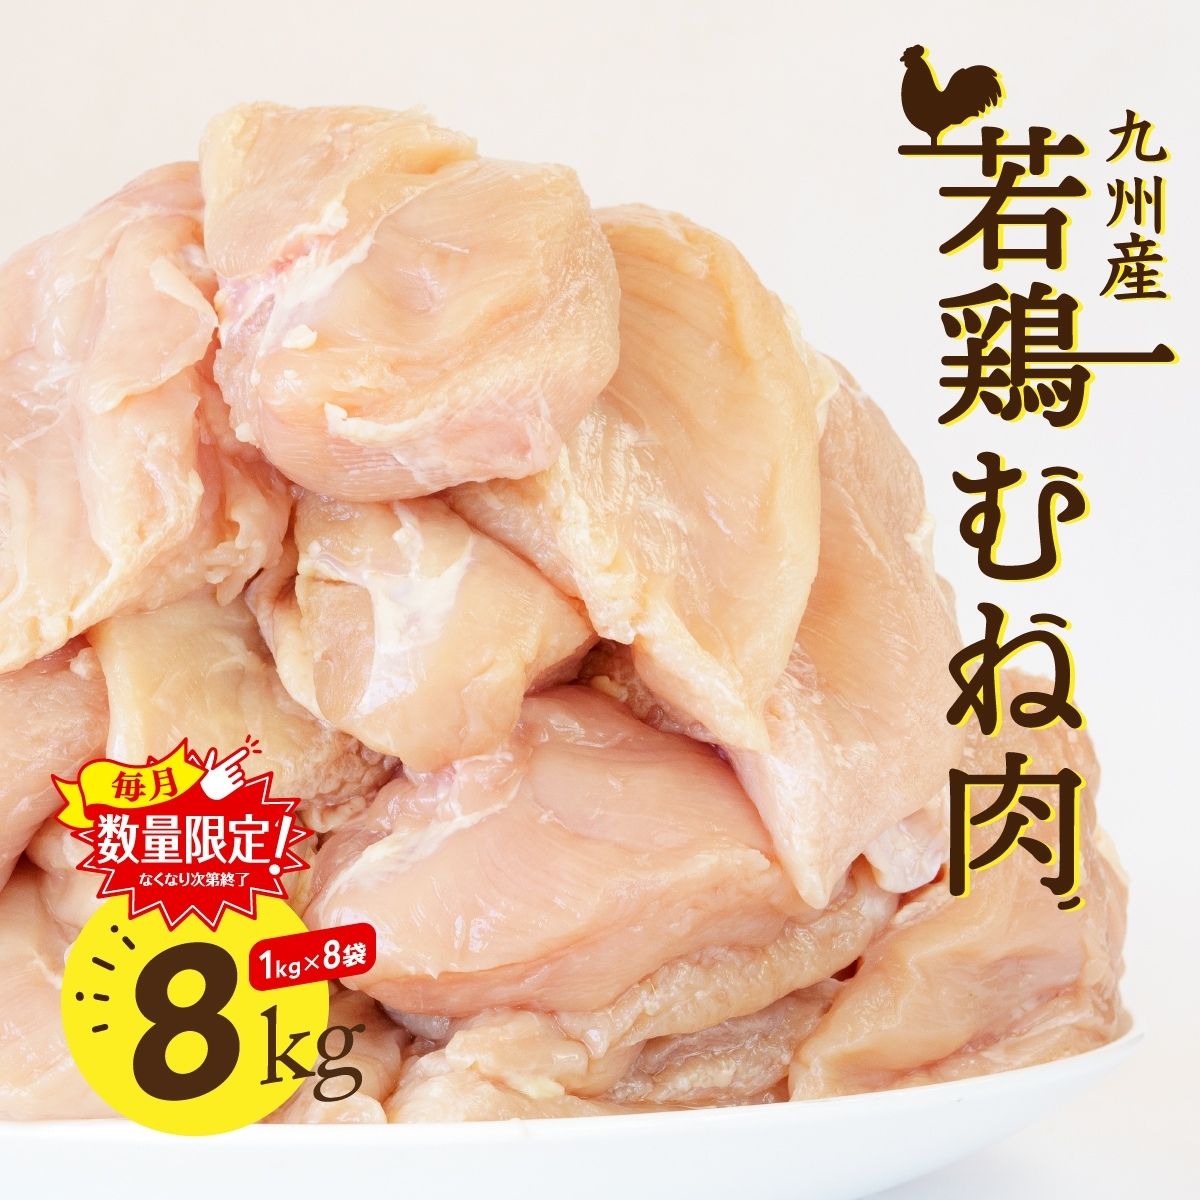 九州産若鶏むね肉 1kg×8袋 合計8kg 大容量 業務用 メガ盛り 唐揚げ チキン南蛮 鶏肉 胸肉 鳥肉 大盛り